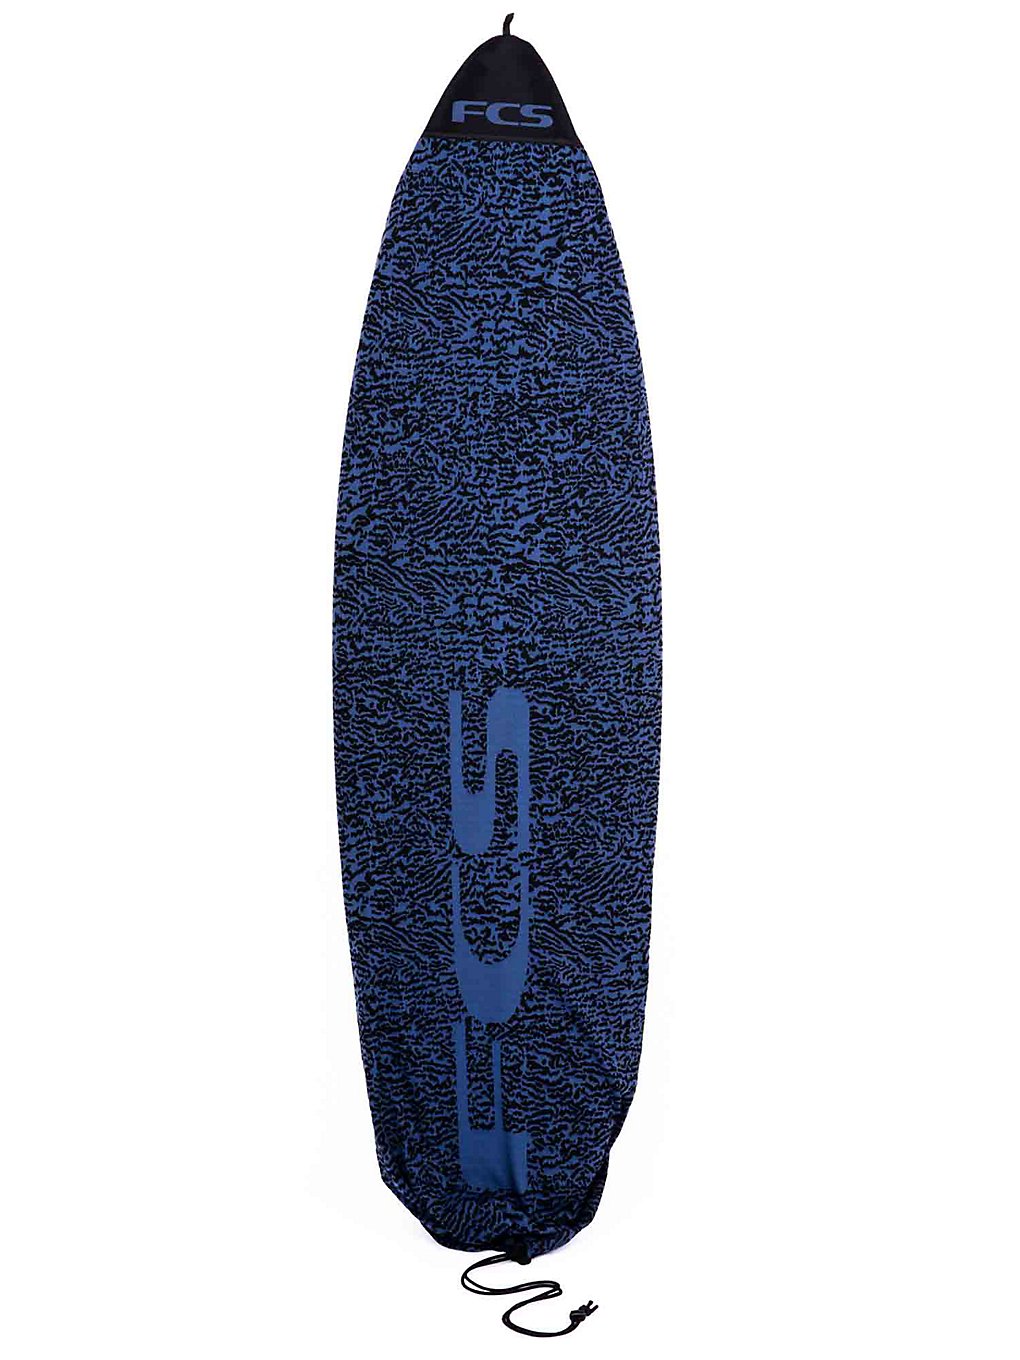 FCS Stretch Fun Board 6'3" Surfboard Bag stone blue kaufen